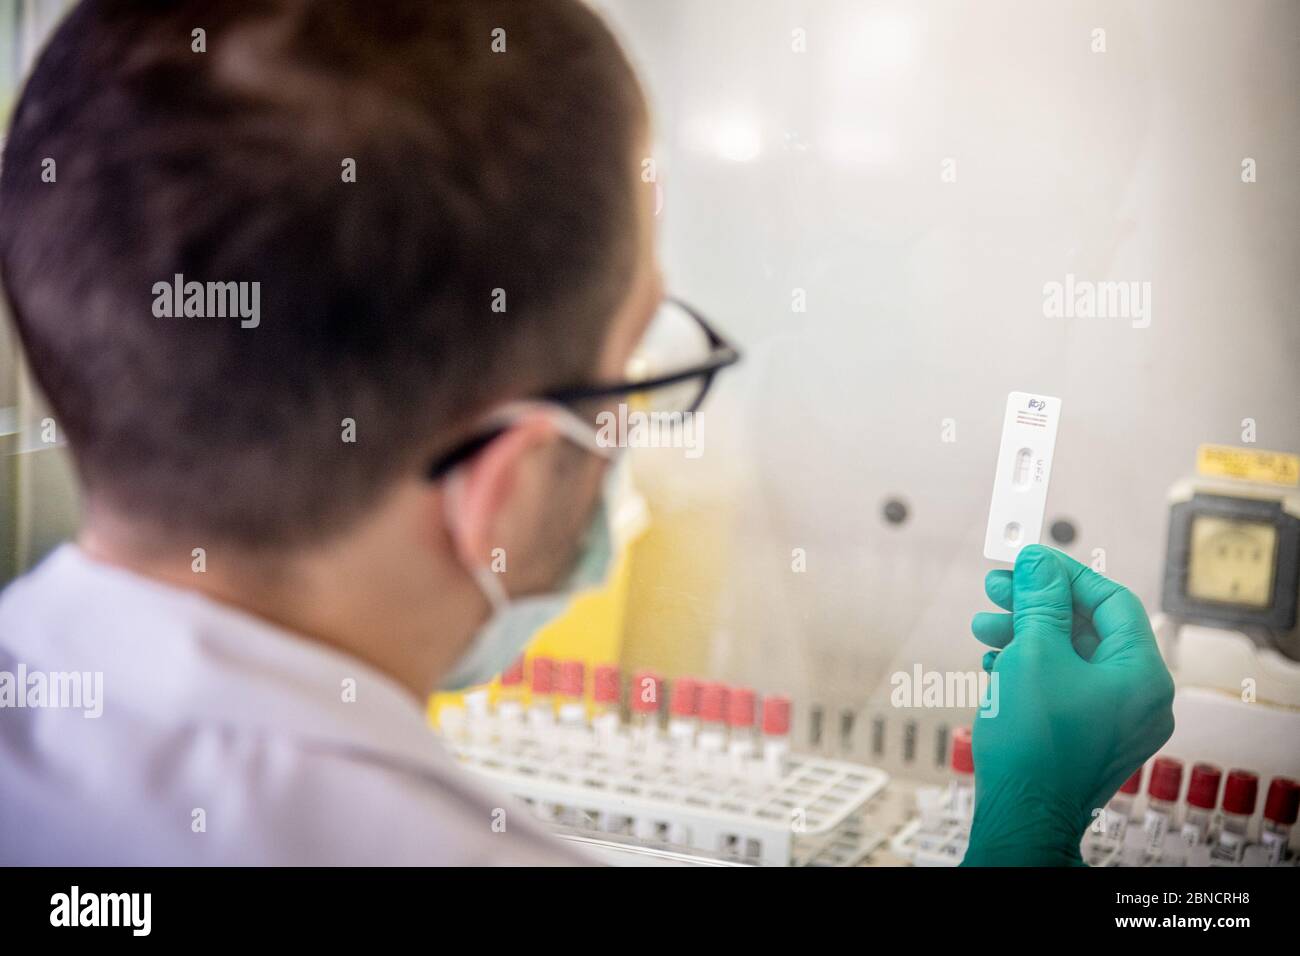 COVID-19 laboratorio di analisi sierologiche per individui, microbiologia e virologia del PST - Polo Scientifico e tecnologico, Gruppo MultiMedica. In laboratorio vengono analizzati fino a 400 test al giorno per confermare la presenza di anticorpi nel sangue. Una tessera di un paziente che prova gli anticorpi IGG positivi (Marco Passaro/Fotogramma, - 2020-05-14) p.s. la foto e' utilizzabile nel messaggio del contenuto in cui e' stata sbattata, e senza intesa diffusatorio del decoro delle persone rappresentate Foto Stock